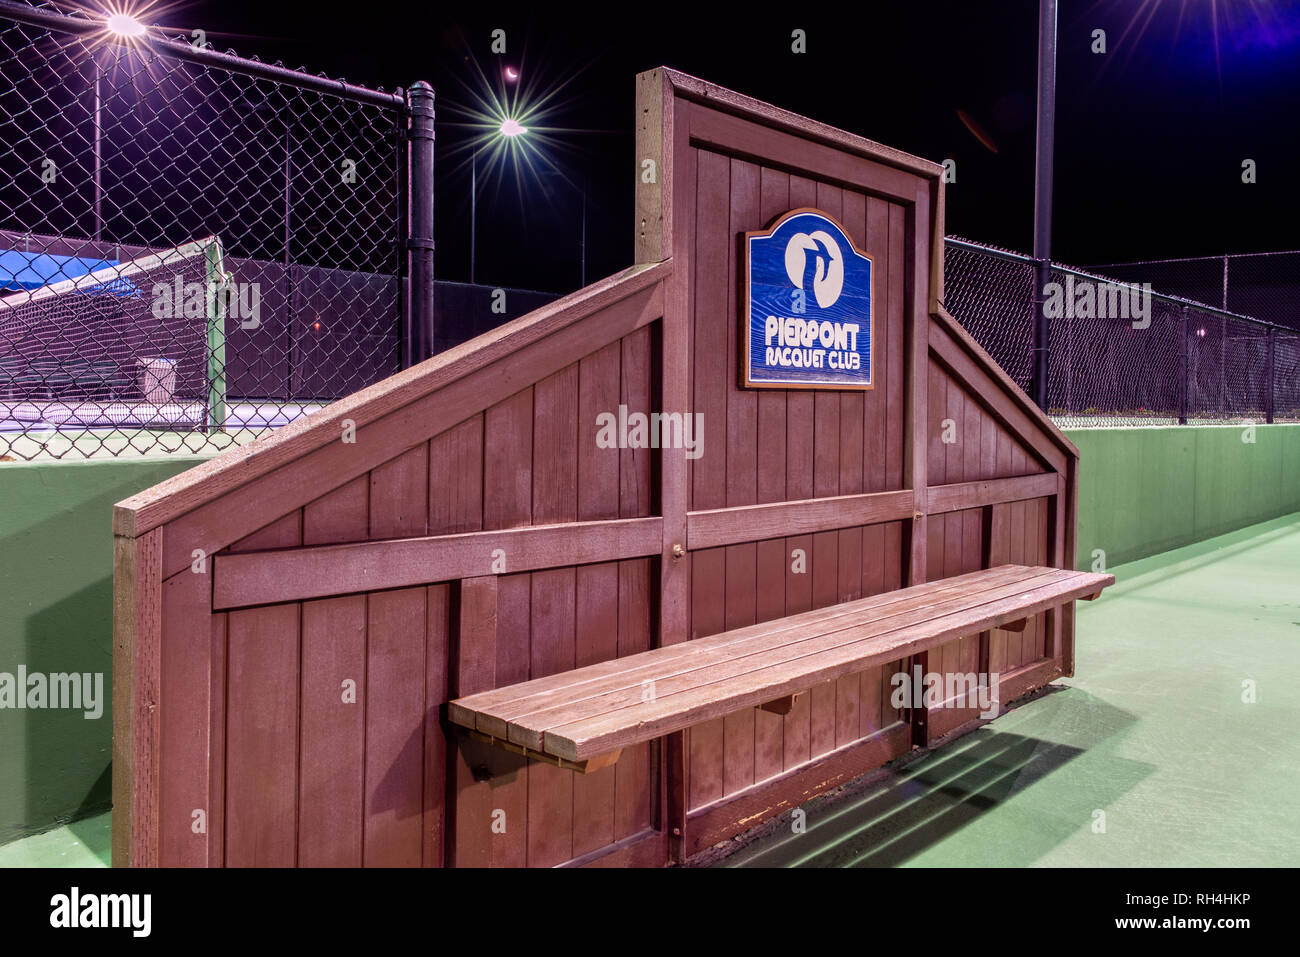 Banco de madera con Pierpont Racquet Club cartel ubicado entre pistas de tenis en Ventura, California, EE.UU. el 30 de enero de 2019. Foto de stock